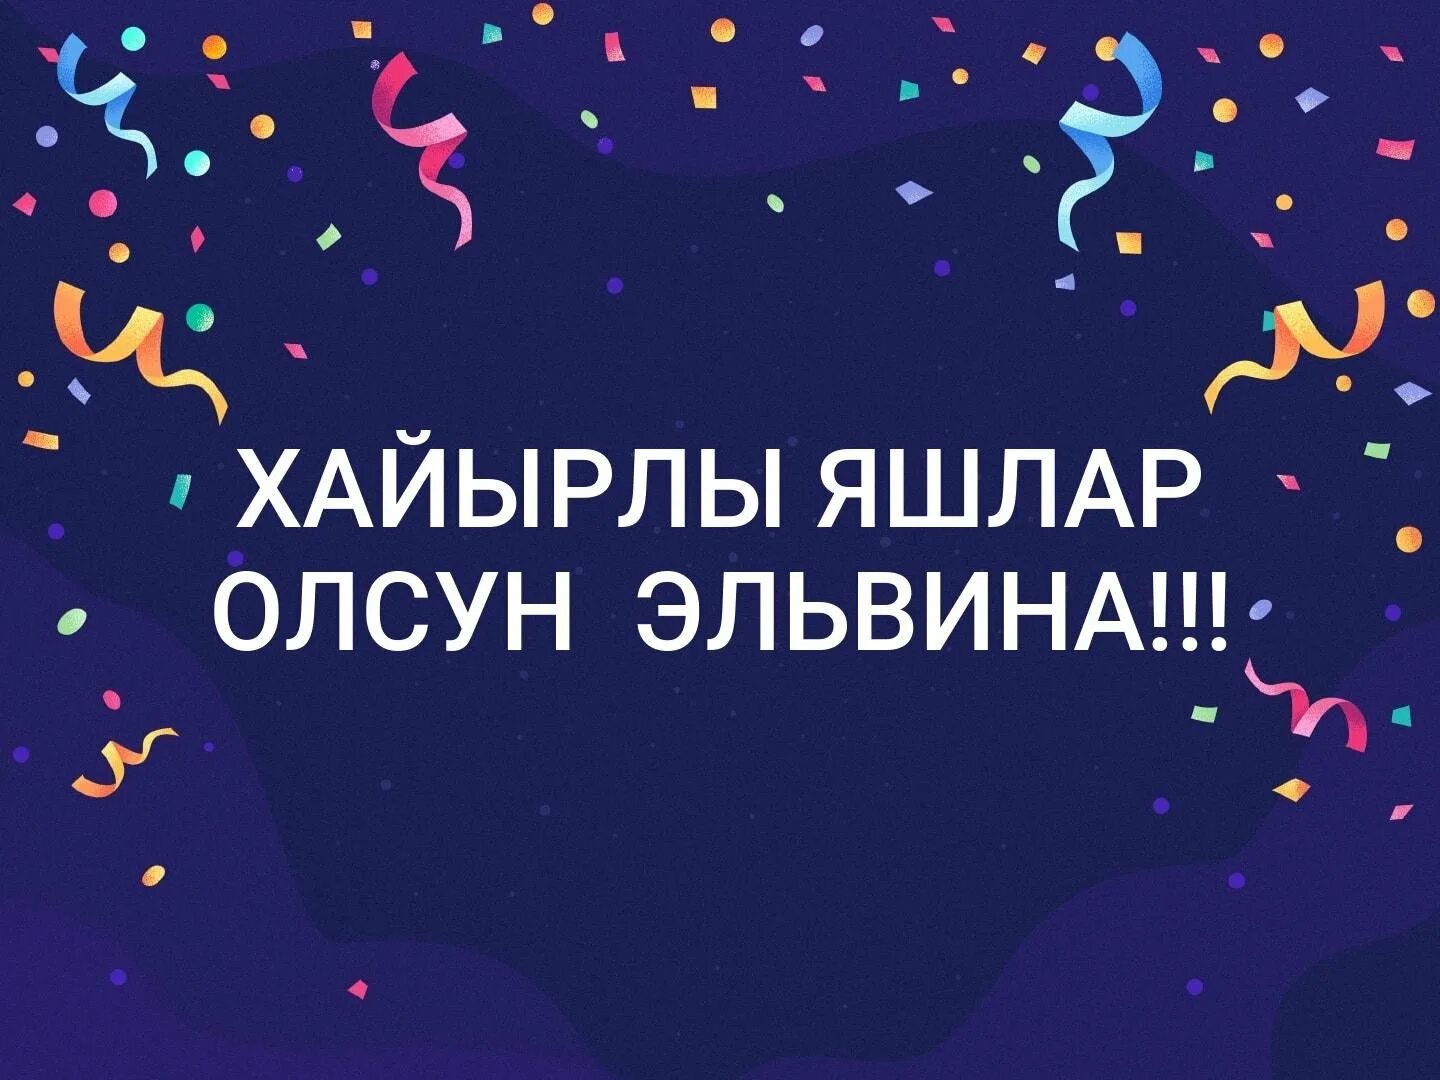 Хайырлы яшлар олсун поздравления на крымско татарском